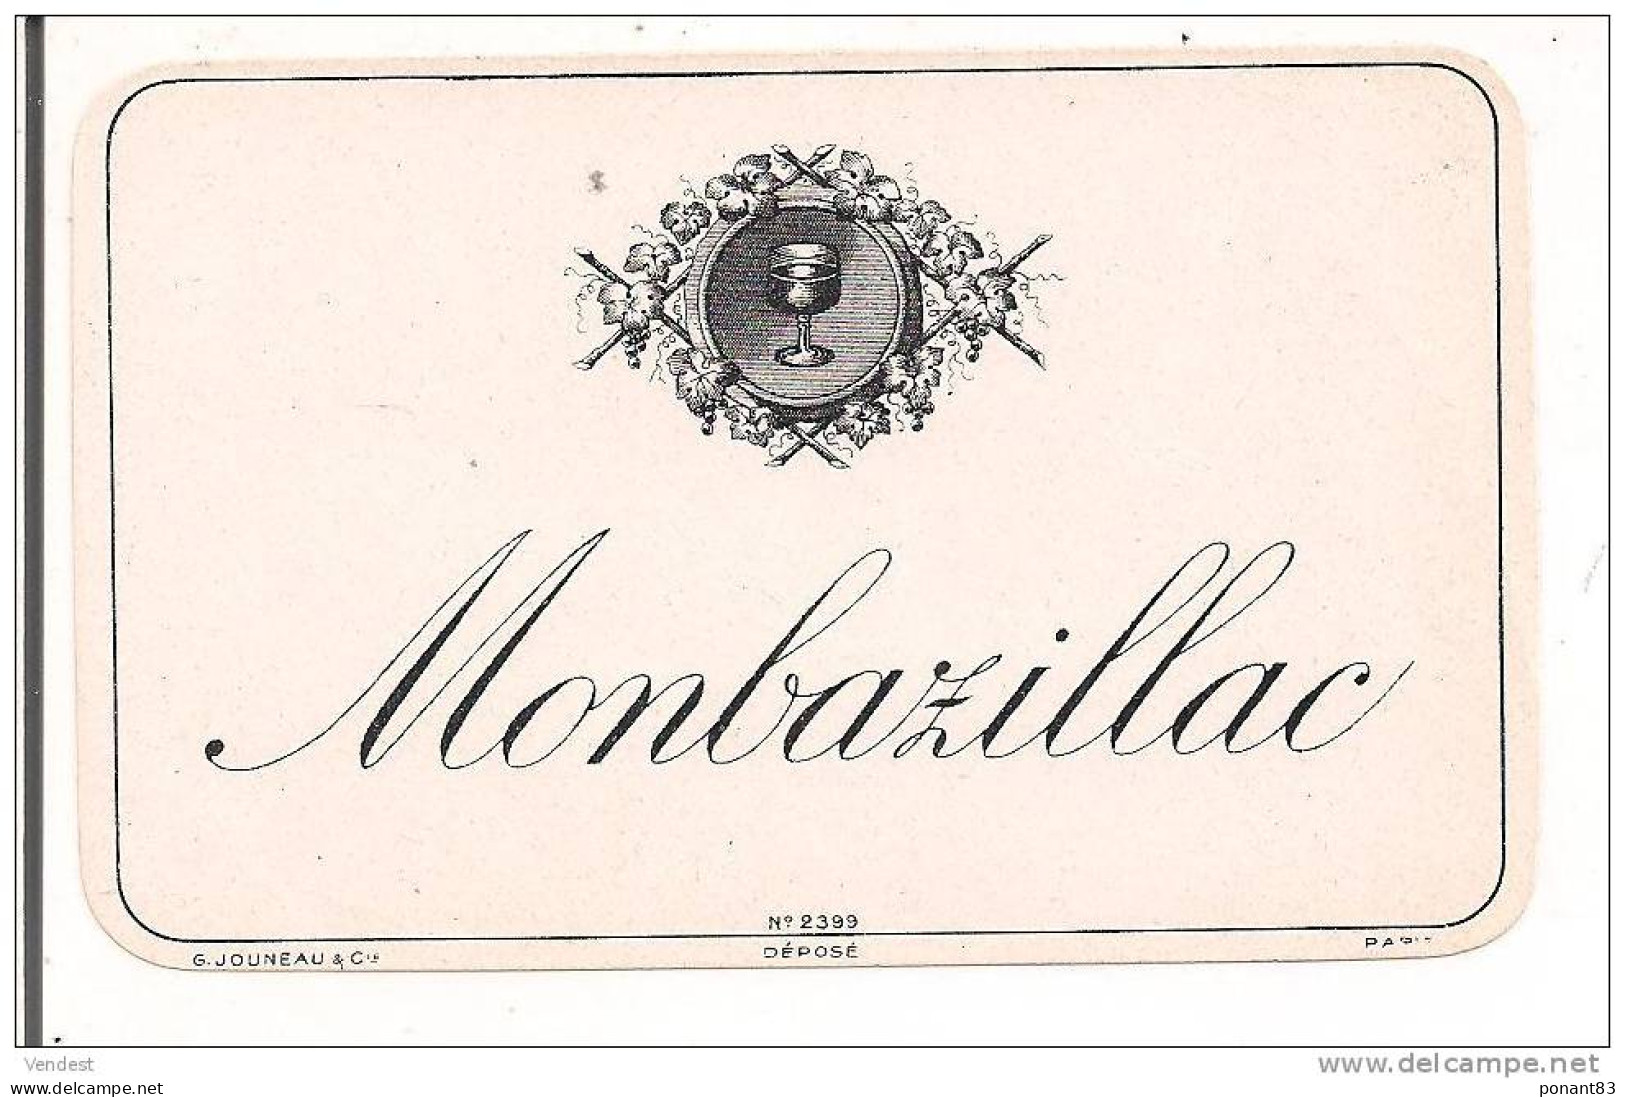 Etiquette MONBAZILLAC - Imp. G.Jouneau, Paris - - Monbazillac